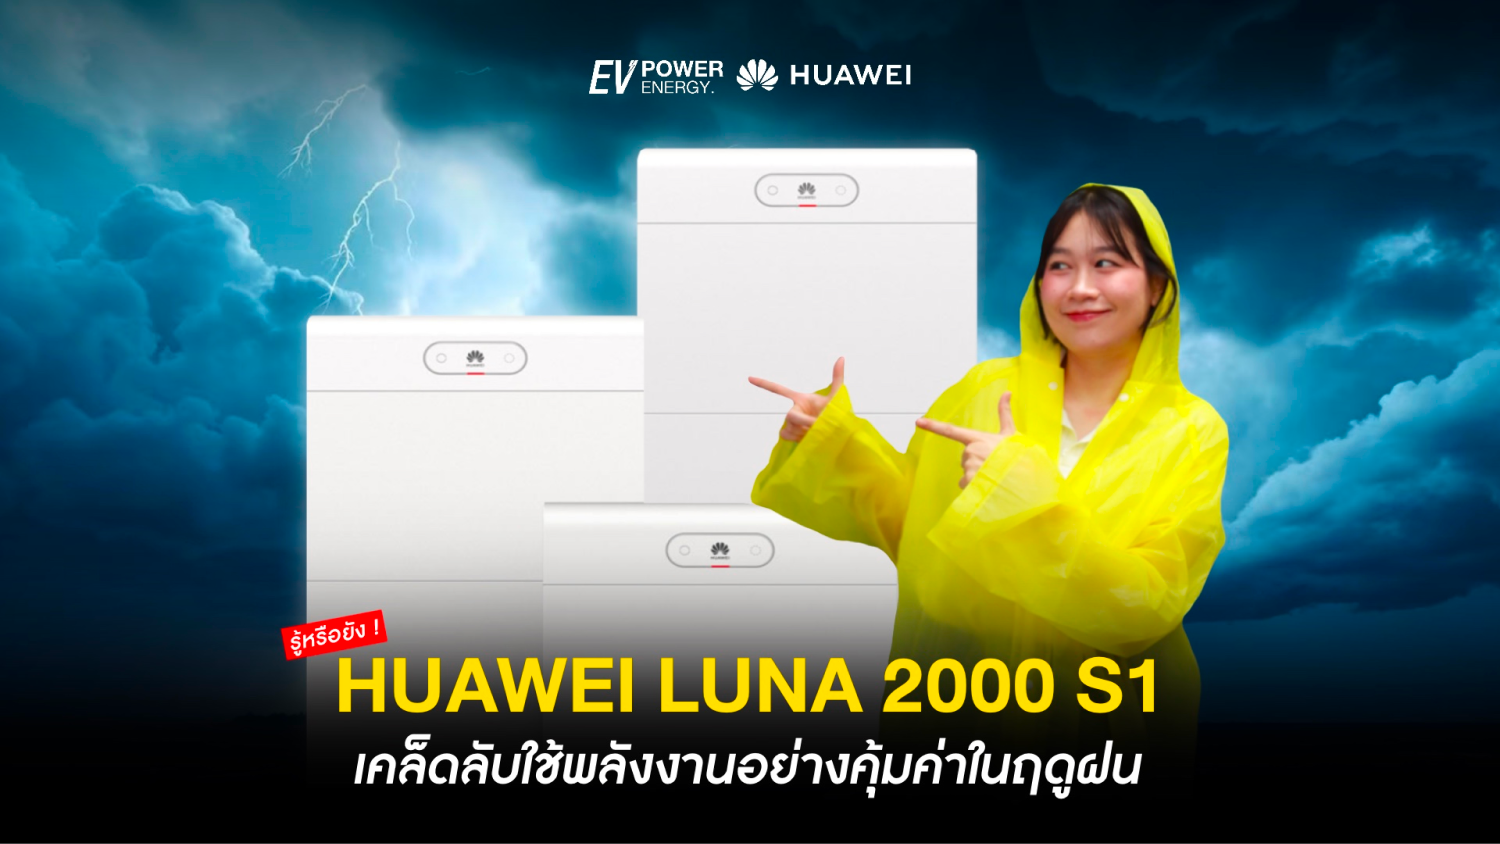 Huawei LUNA 2000 S1 เคล็ดลับใช้พลังงานอย่างคุ้มค่าในฤดูฝน